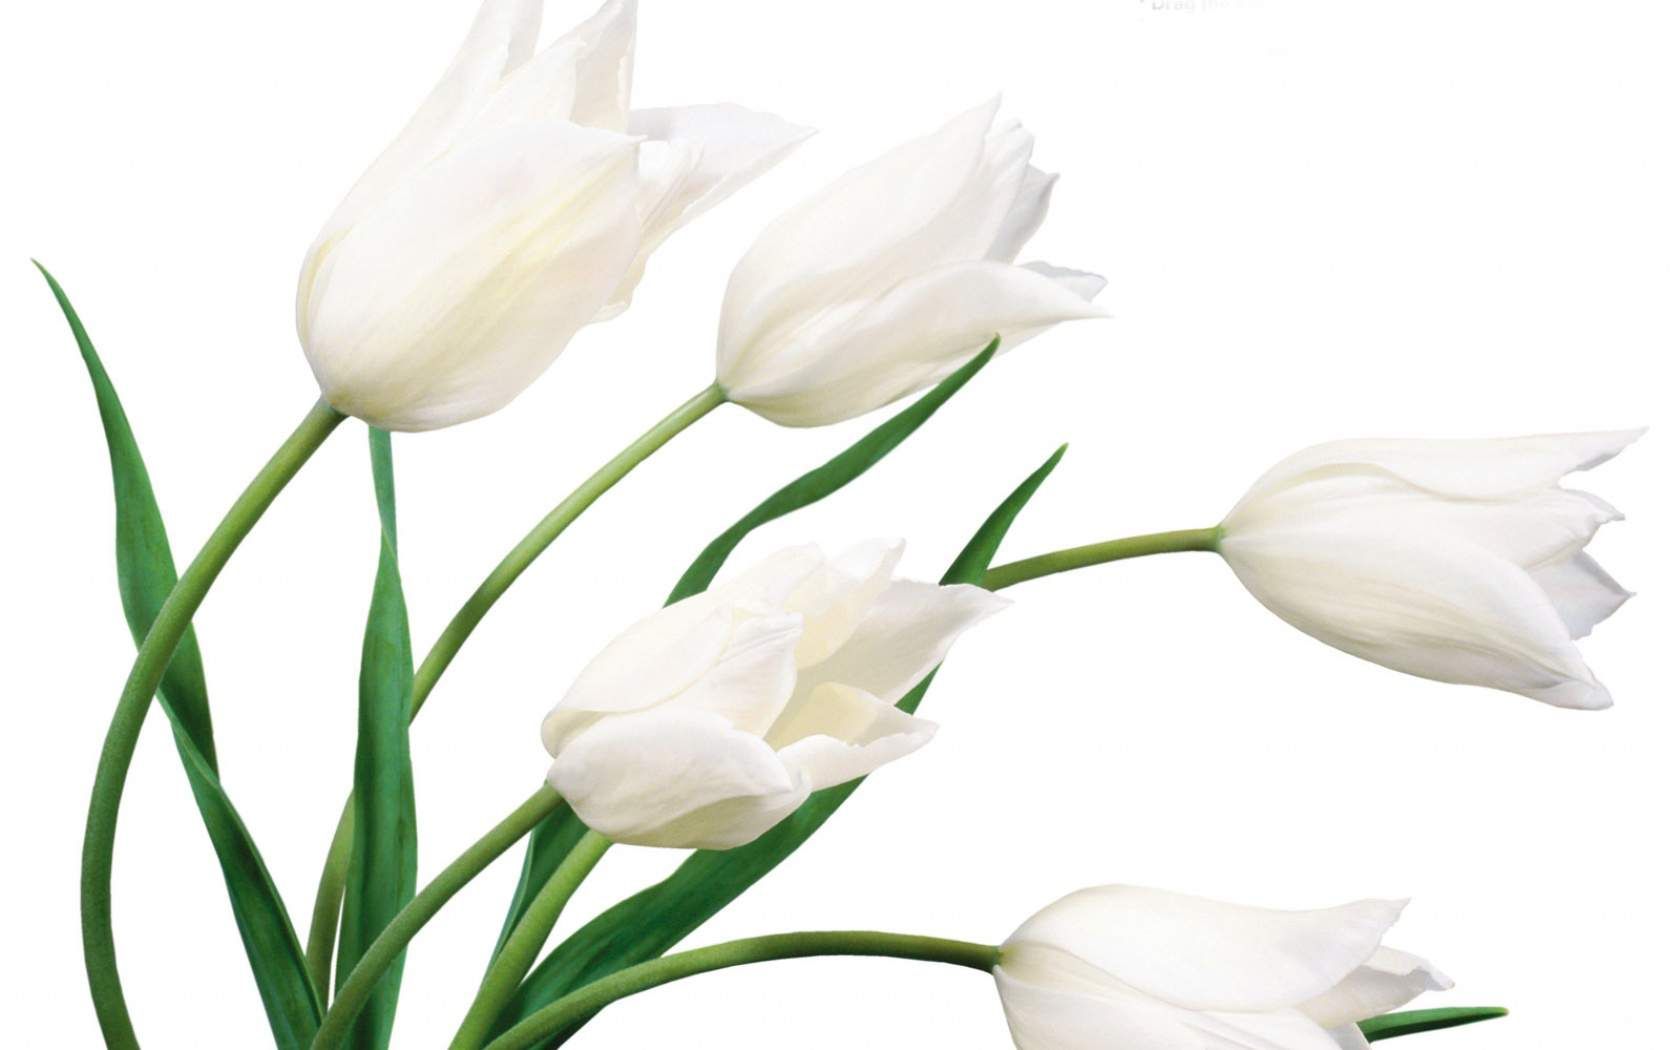 White Flower HD Wallpaper